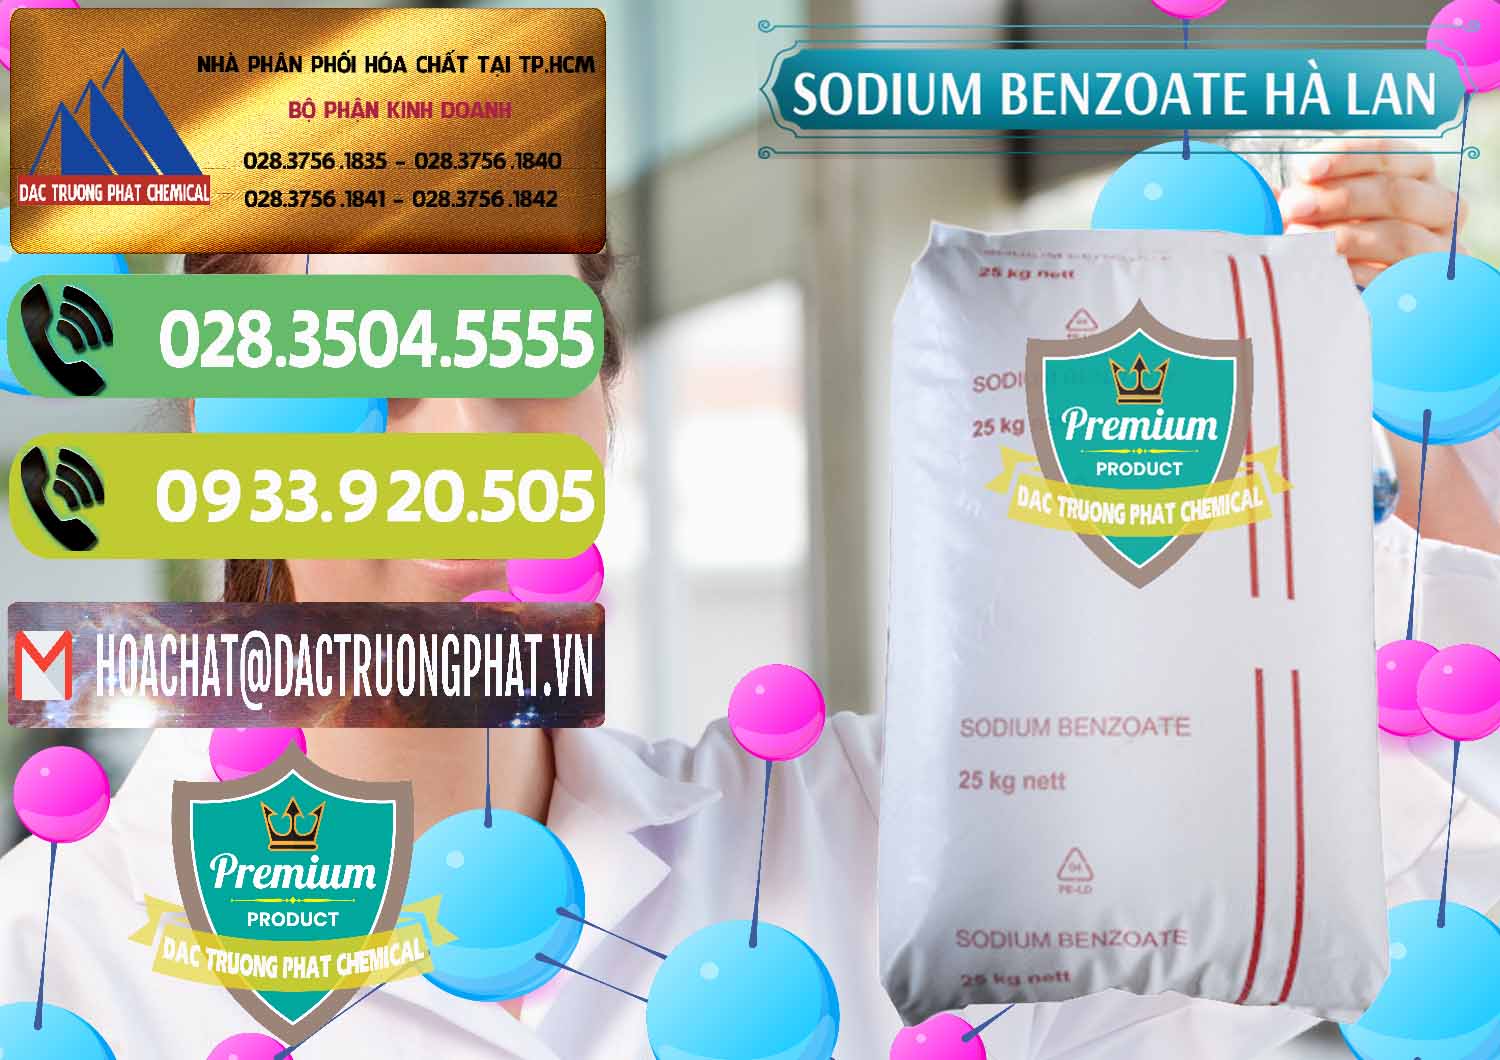 Chuyên bán và cung ứng Sodium Benzoate - Mốc Bột Chữ Cam Hà Lan Netherlands - 0360 - Chuyên phân phối - cung ứng hóa chất tại TP.HCM - hoachatmientay.vn